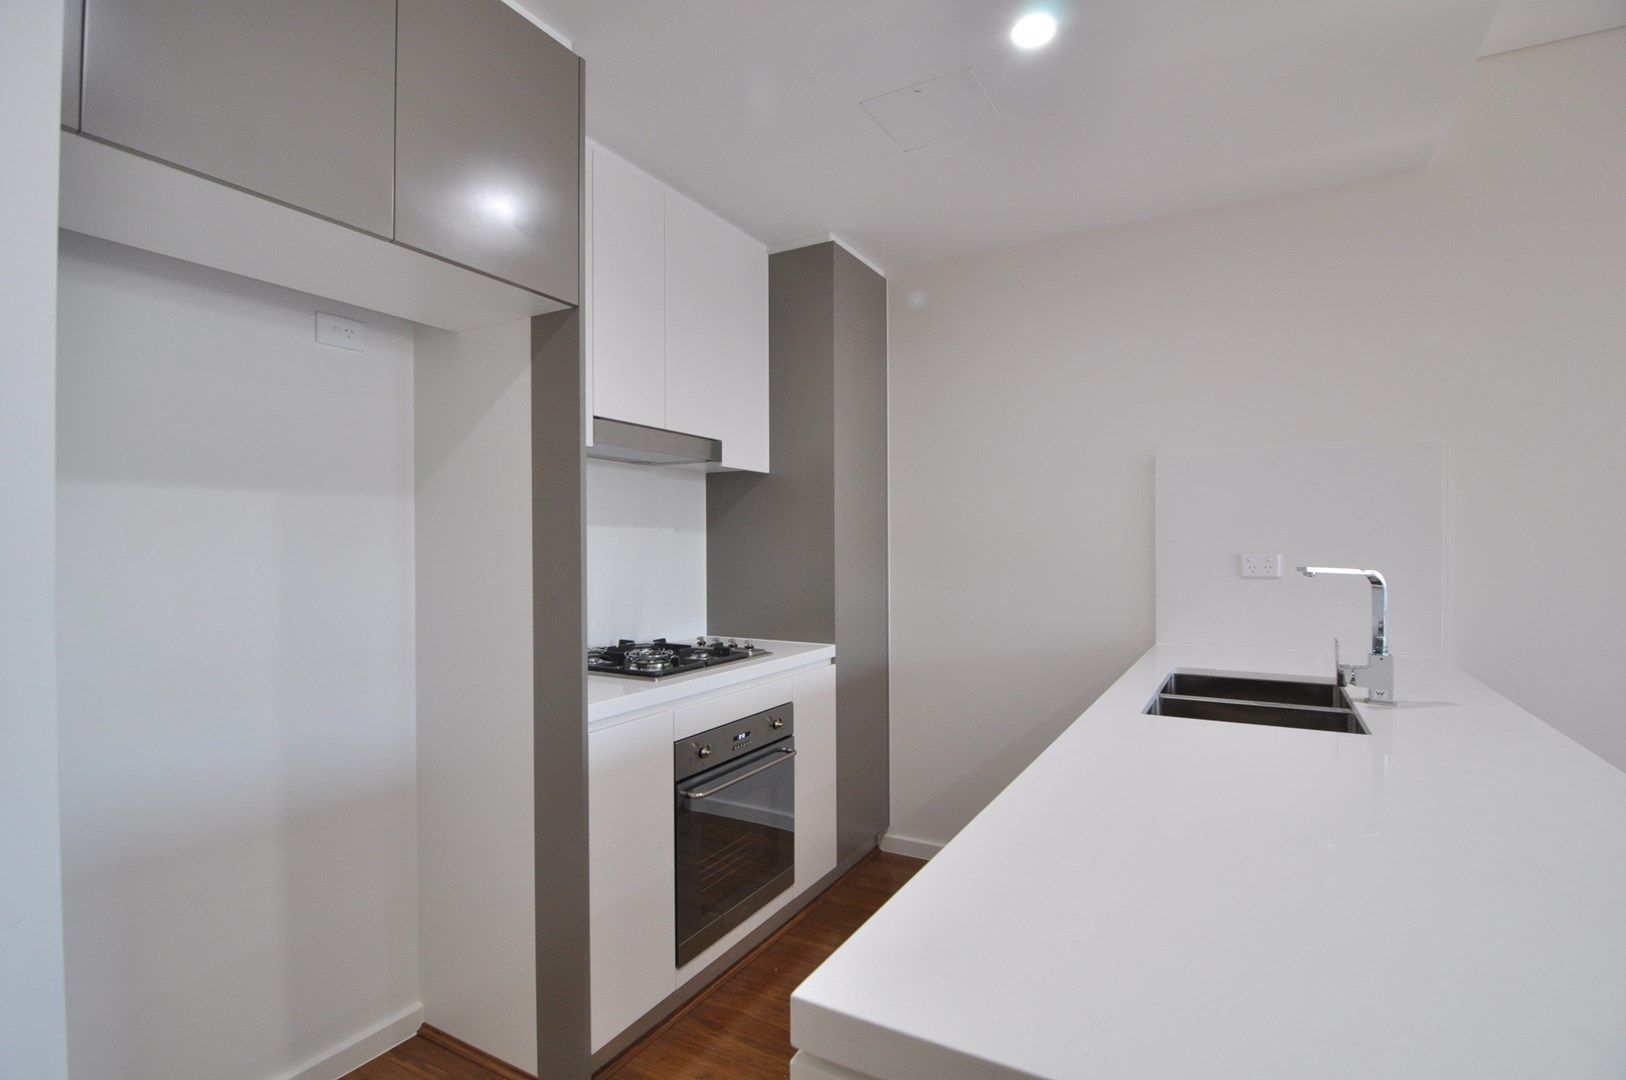 2 bedrooms Apartment / Unit / Flat in Level 5/69 - 71 Parramatta Road CAMPERDOWN NSW, 2050